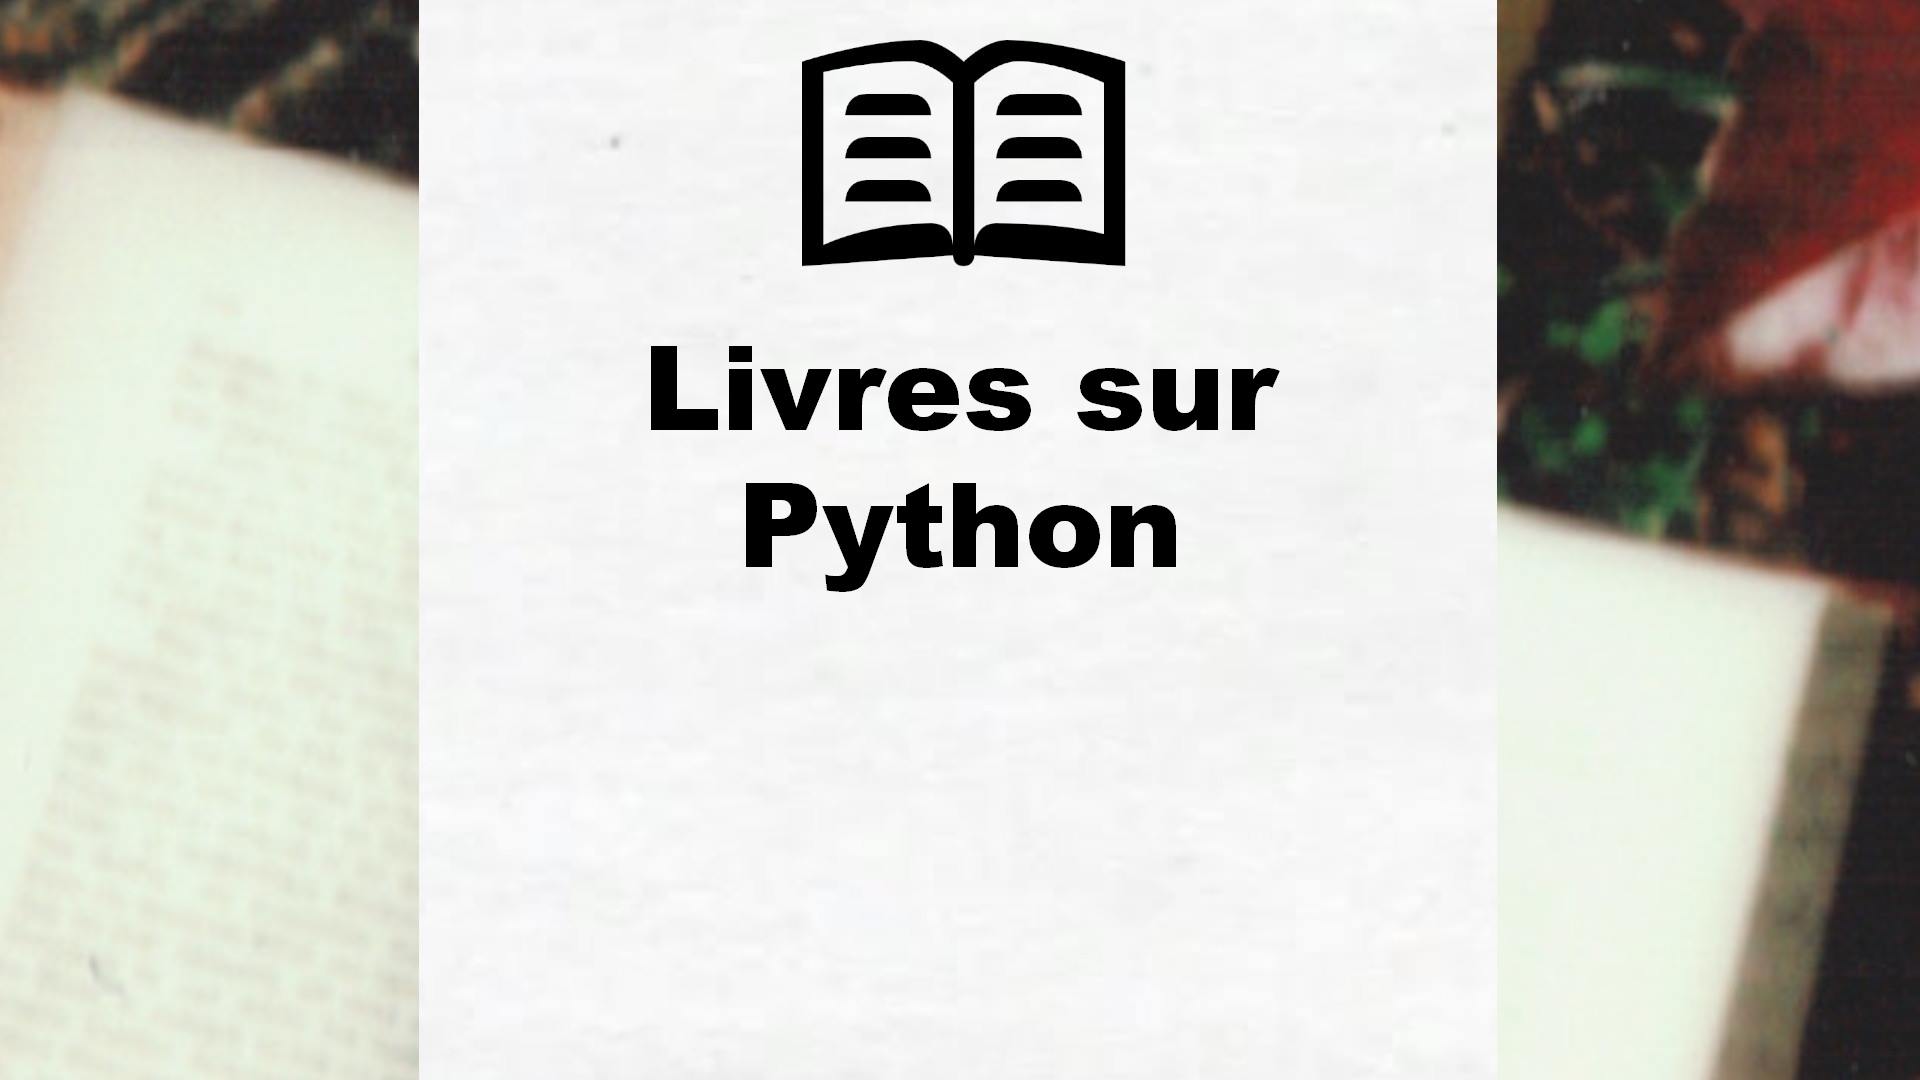 Livres sur Python